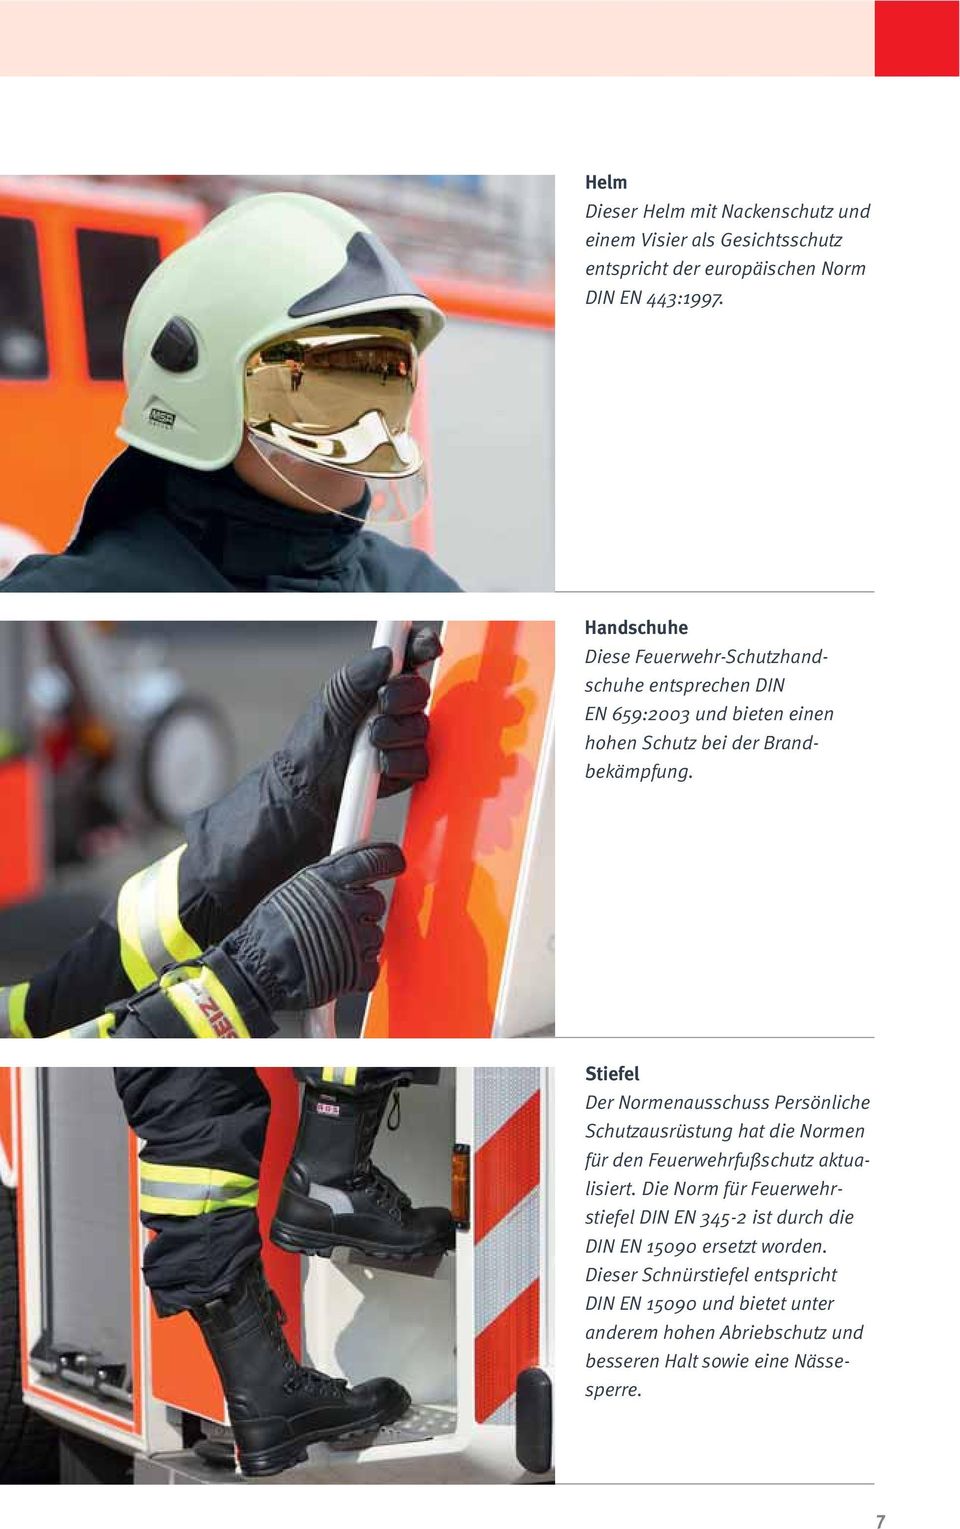 Stiefel Der Normenausschuss Persönliche Schutzausrüstung hat die Normen für den Feuerwehrfußschutz aktualisiert.